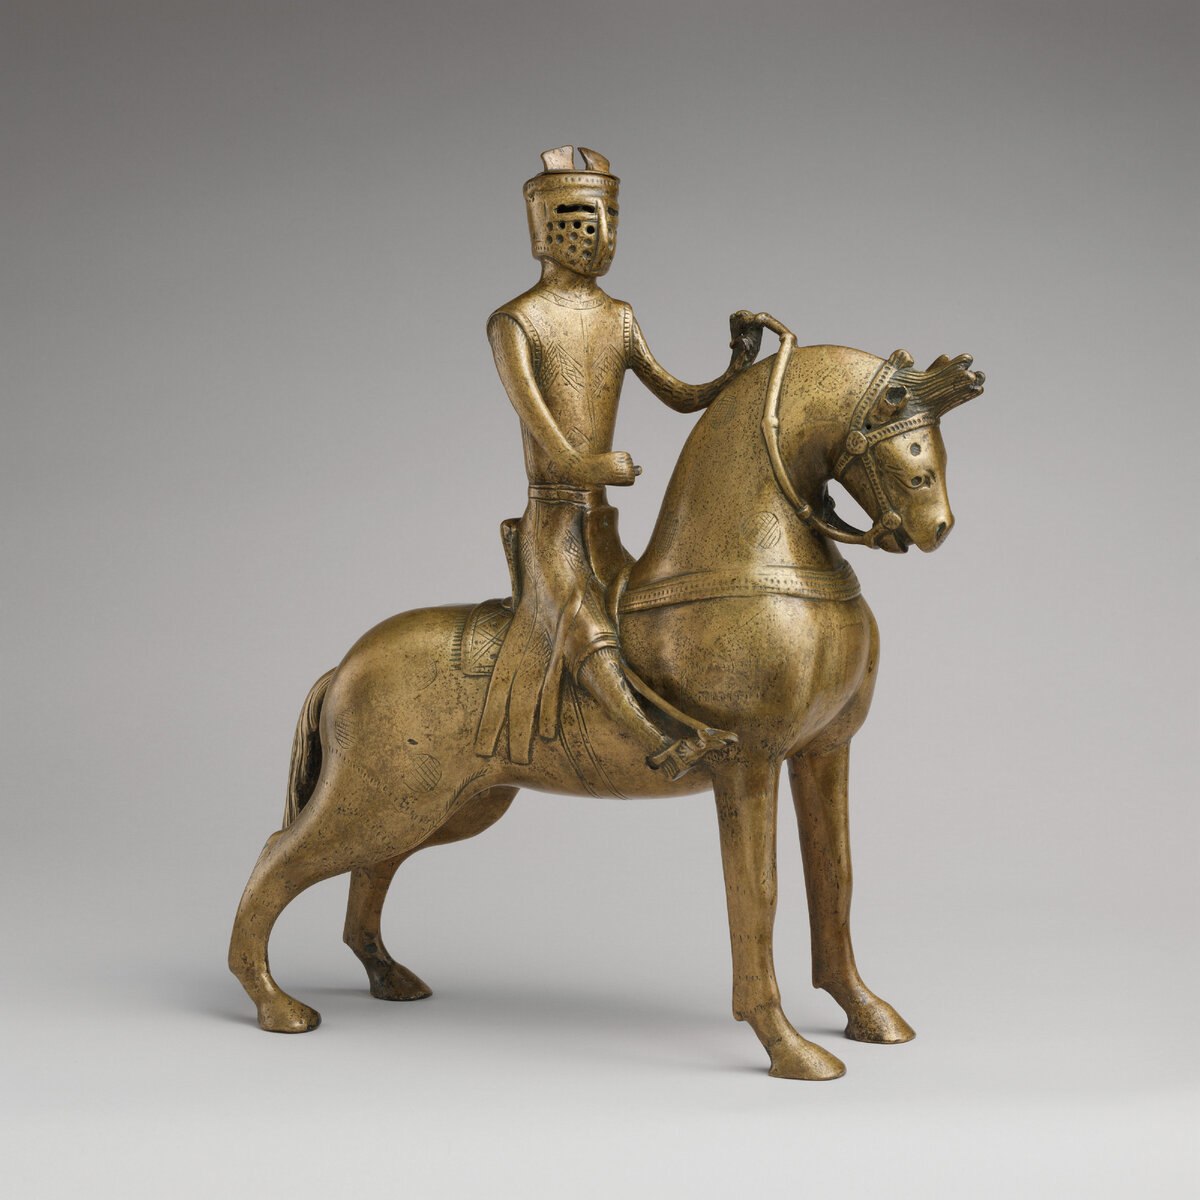 Акваманил "Рыцарь на коне". Германия. Около 1250 года. Музей Метрополитен, Нью-Йорк